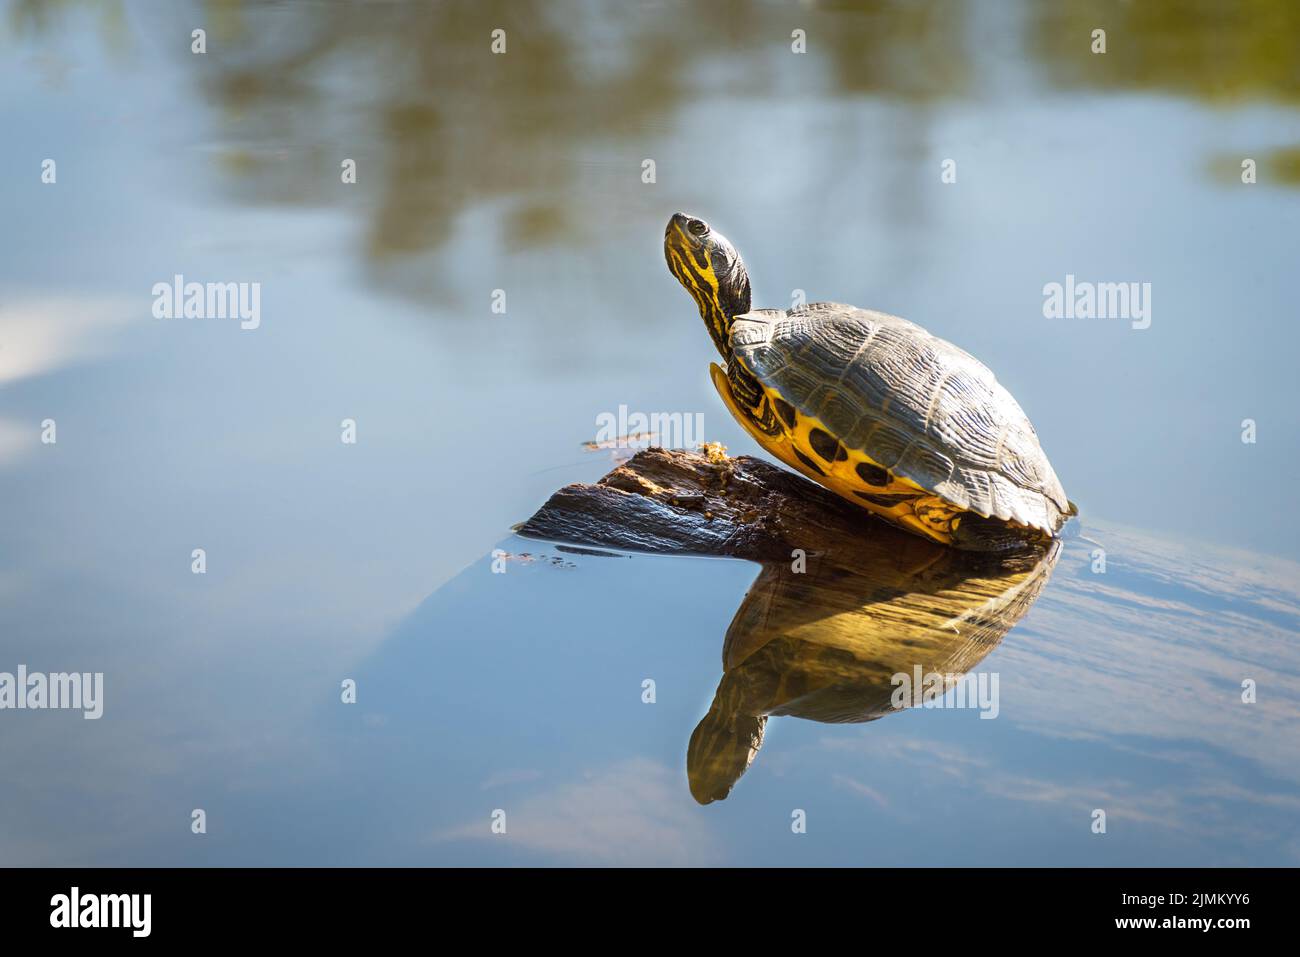 Una tortuga pintada recibe un poco de sol en un registro en primavera Foto de stock